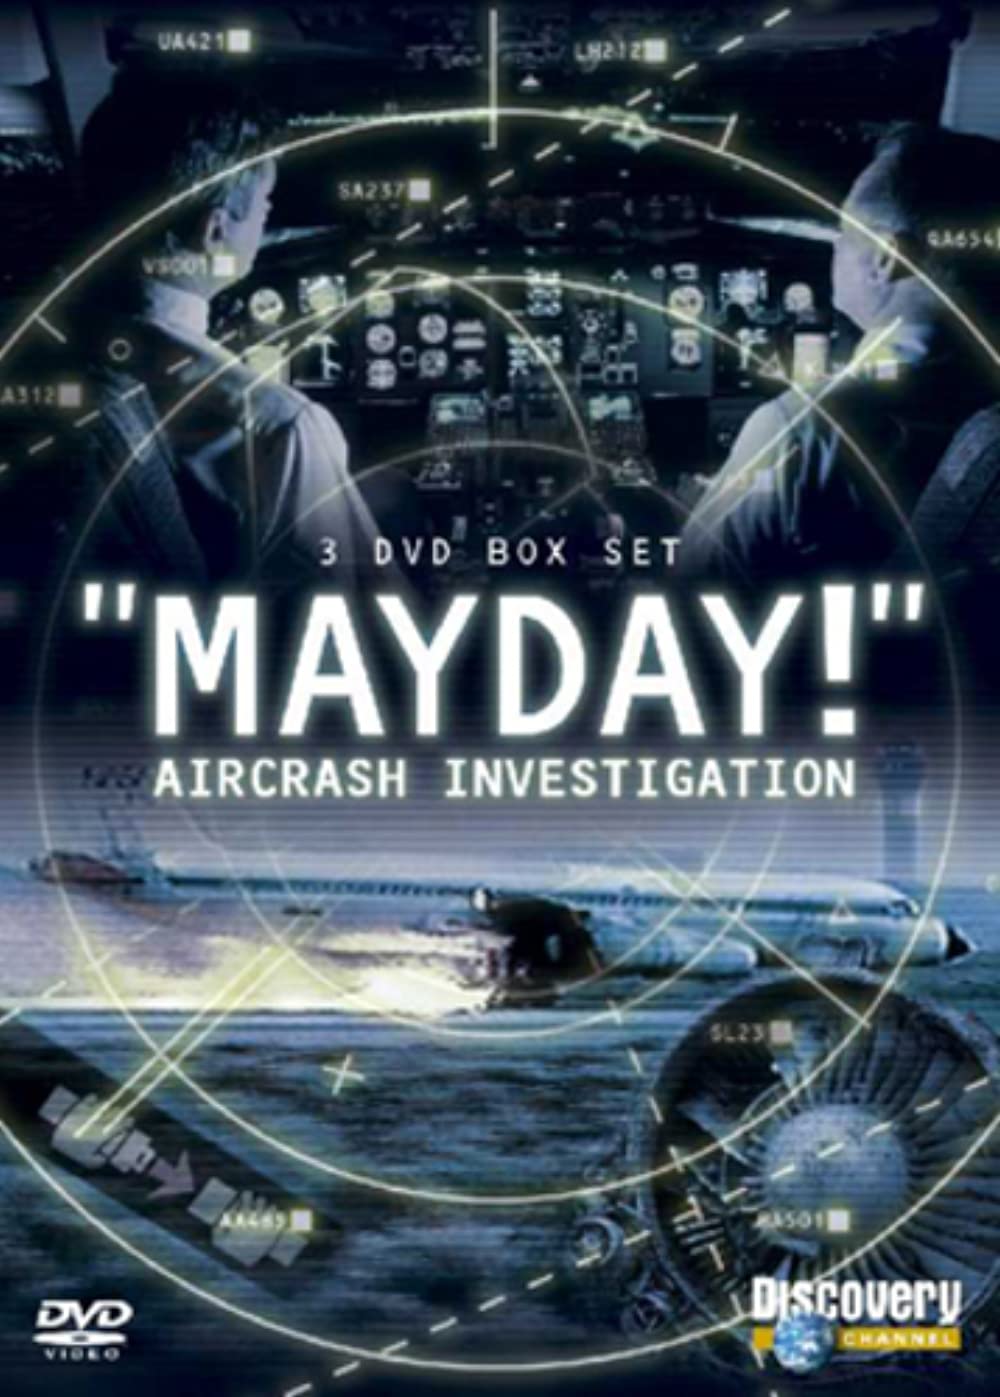 Filmbeschreibung zu Mayday